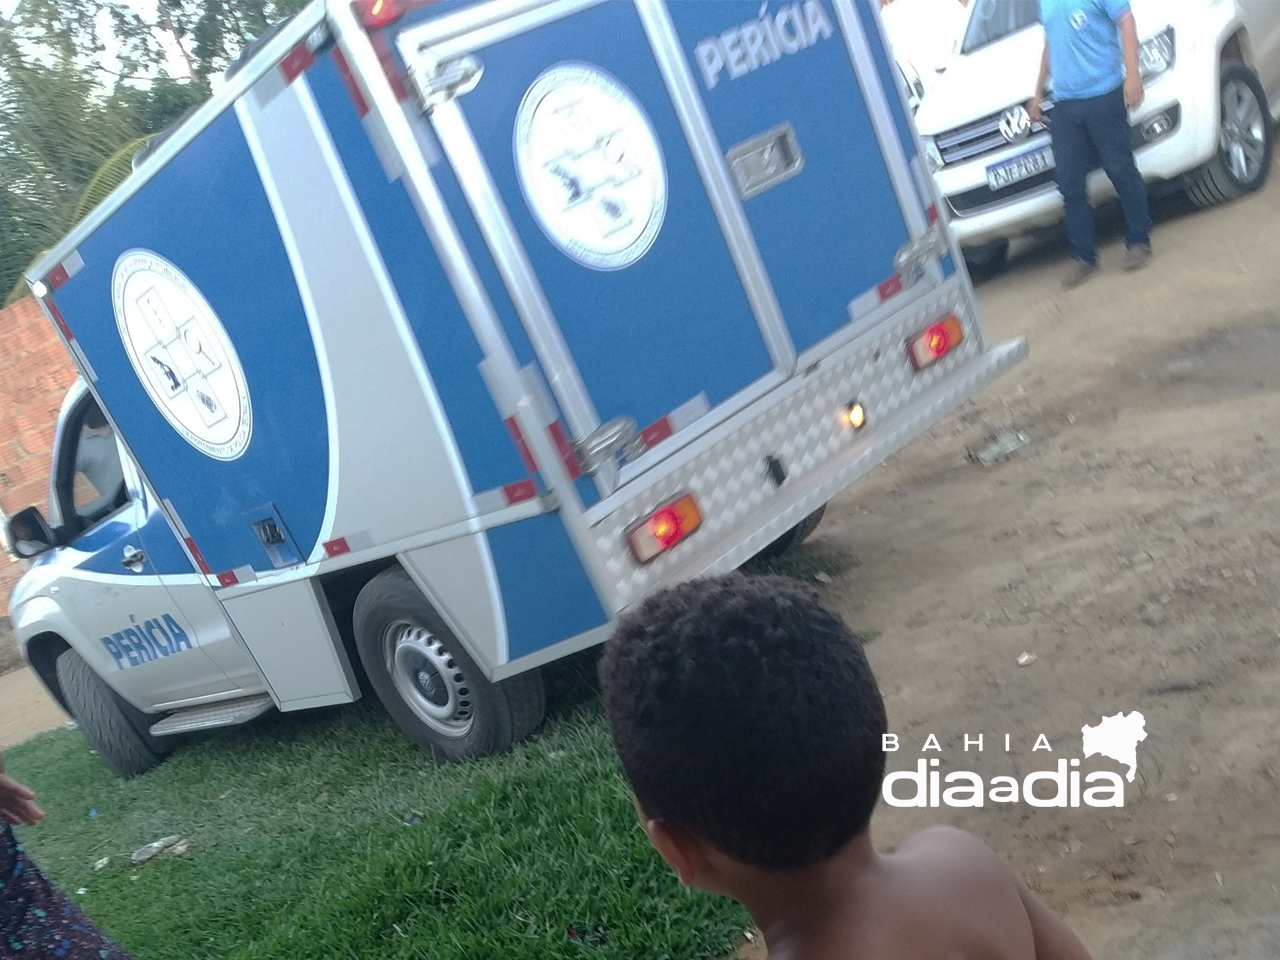 Corpo de jovem com transtorno mental é encontrado no bairro Pereirão em Itabela. (Foto: BAHIA DIA A DIA)